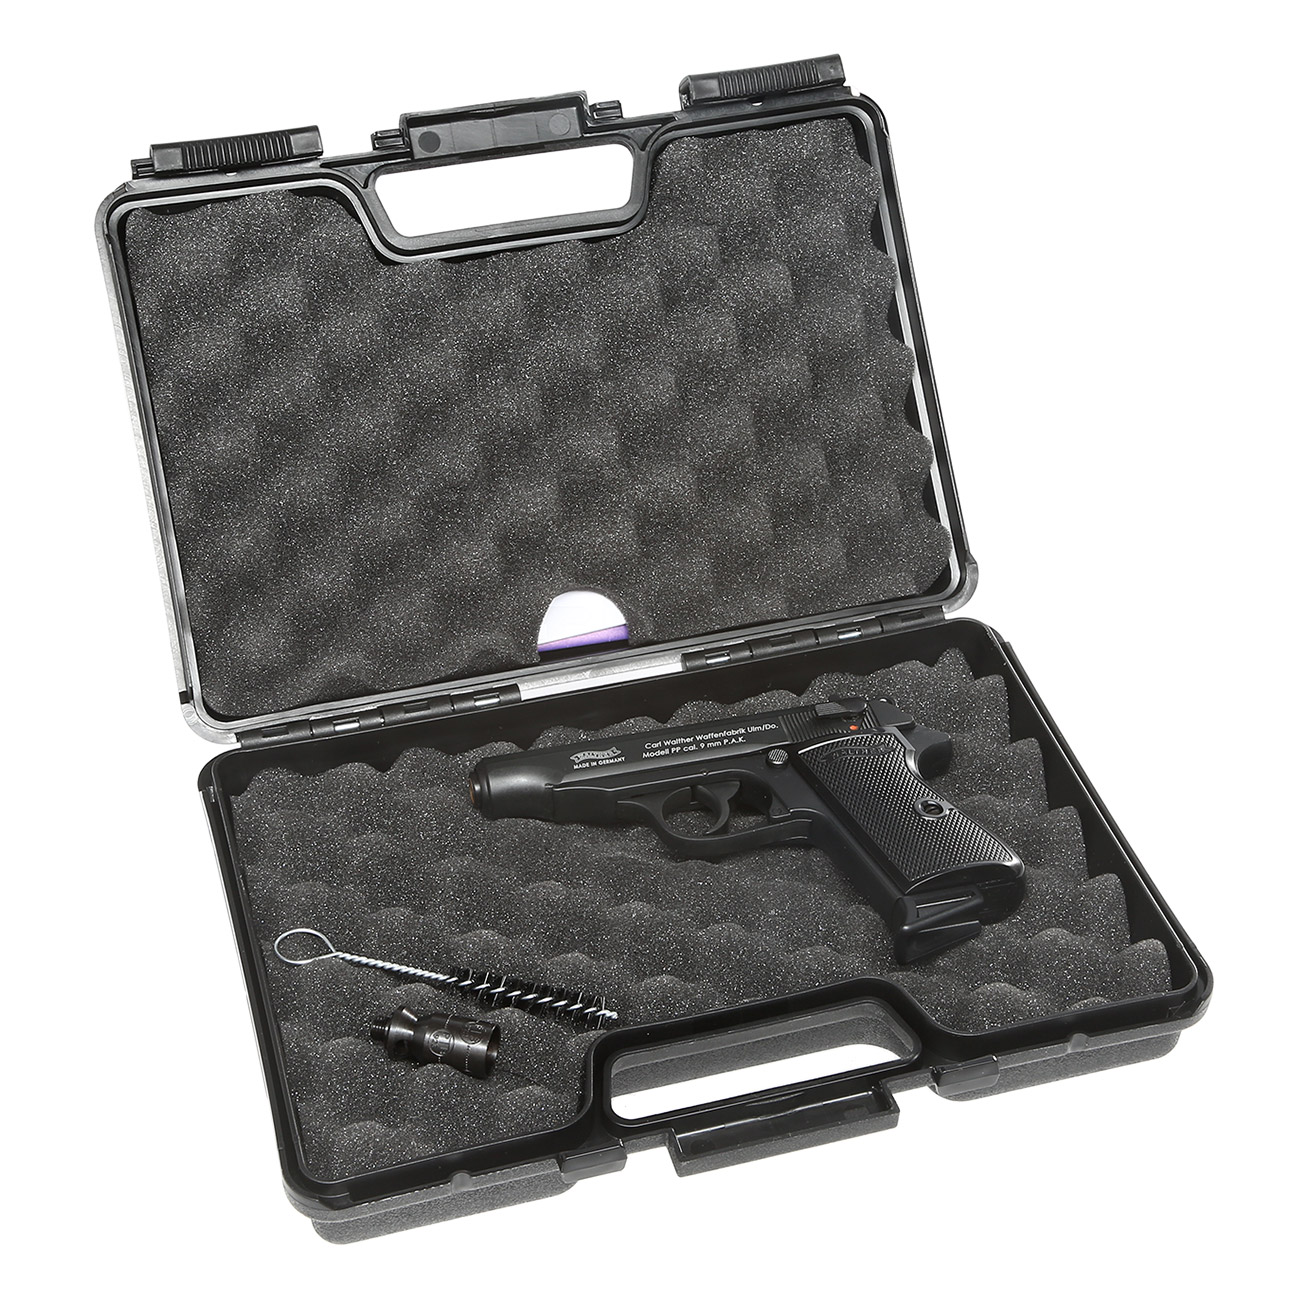 Walther PP Schreckschuss Pistole Kal. 9mm P.A.K. schwarz brüniert Bild 1